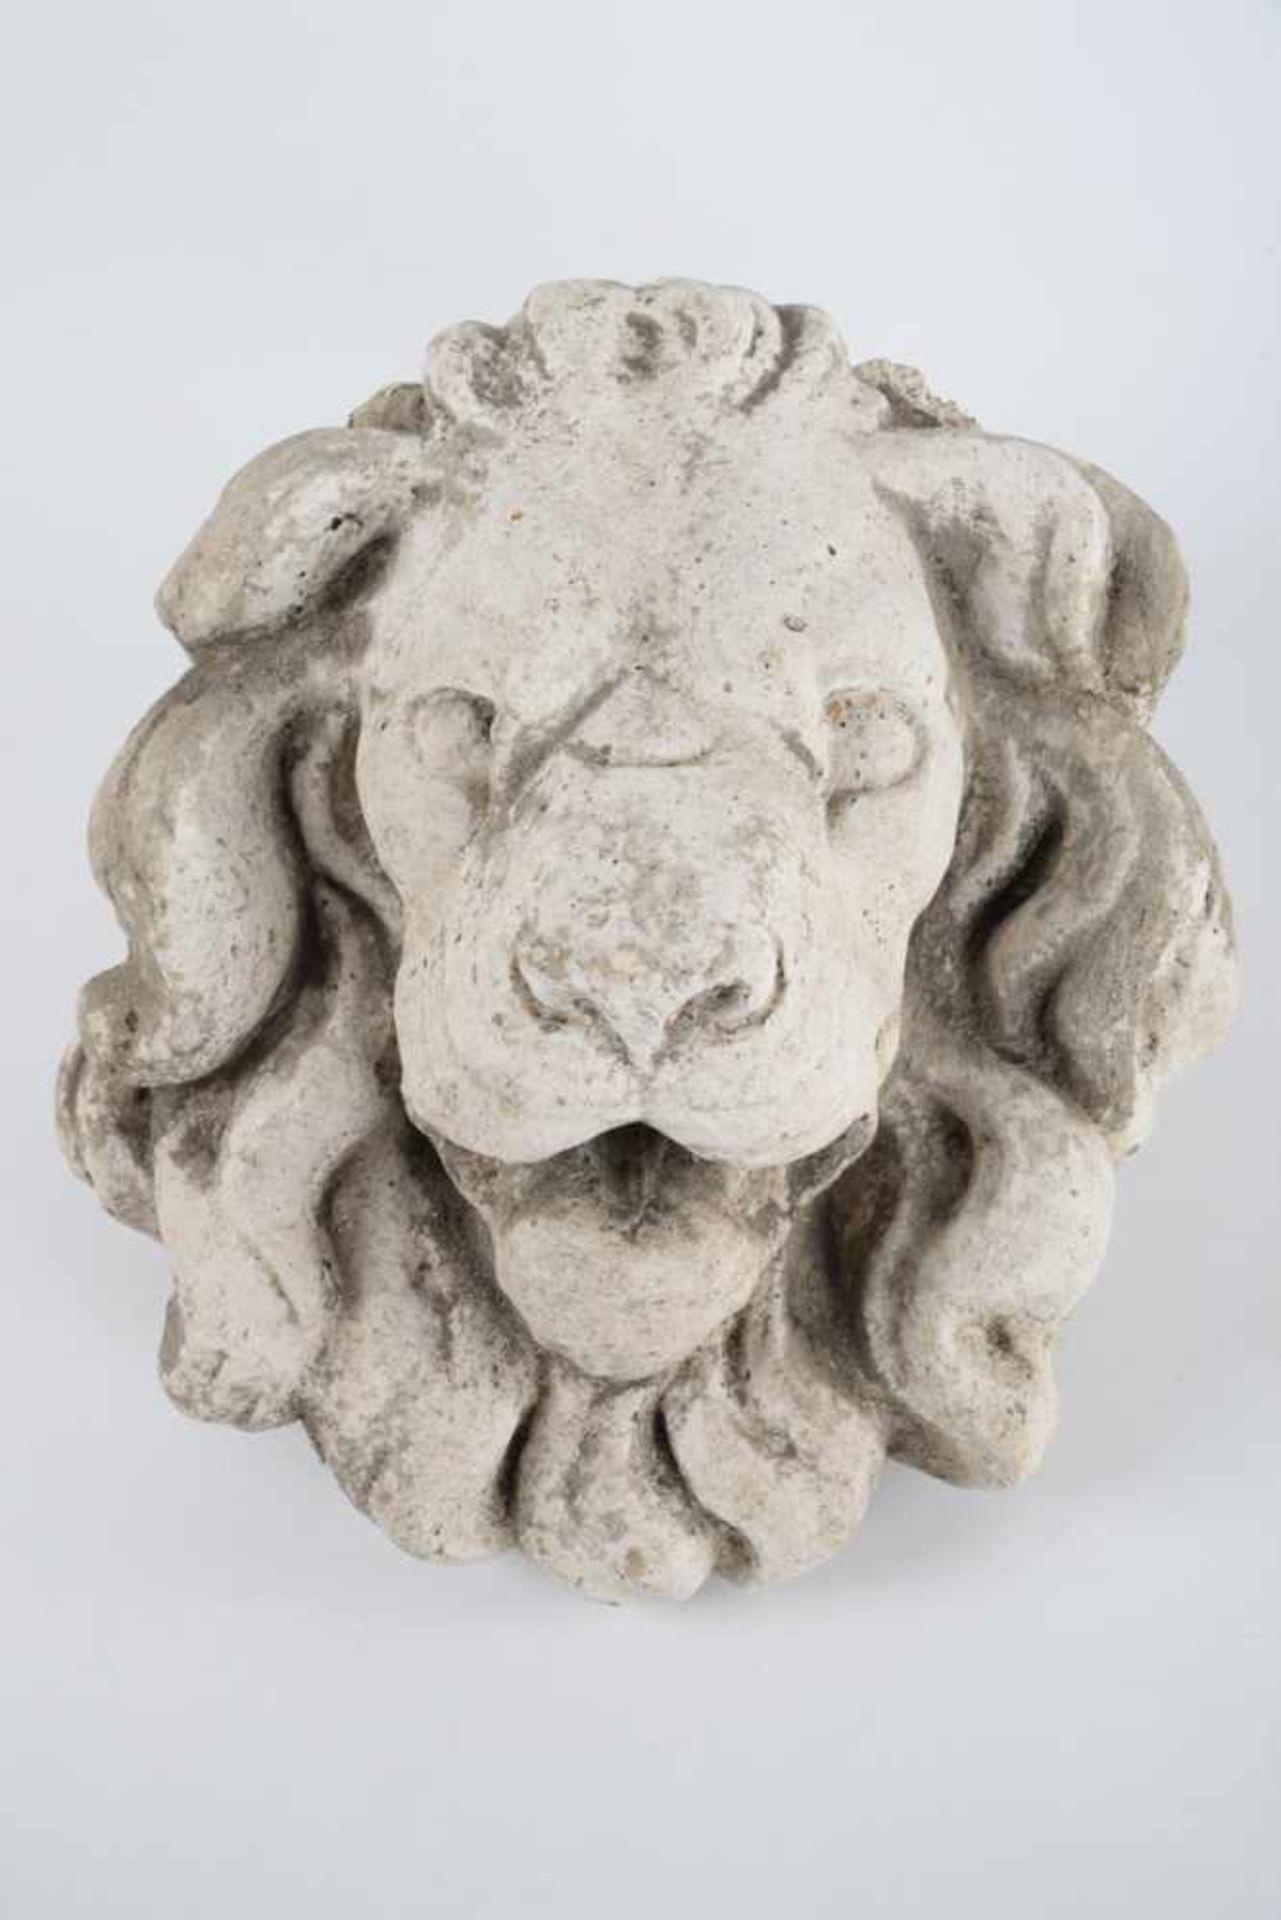 Wasserspeier Löwenkopf.Steinguss, Fassung angegangen, etwas Grünspan, wohl antik. Maße ca. 27 x 30 x - Bild 2 aus 7